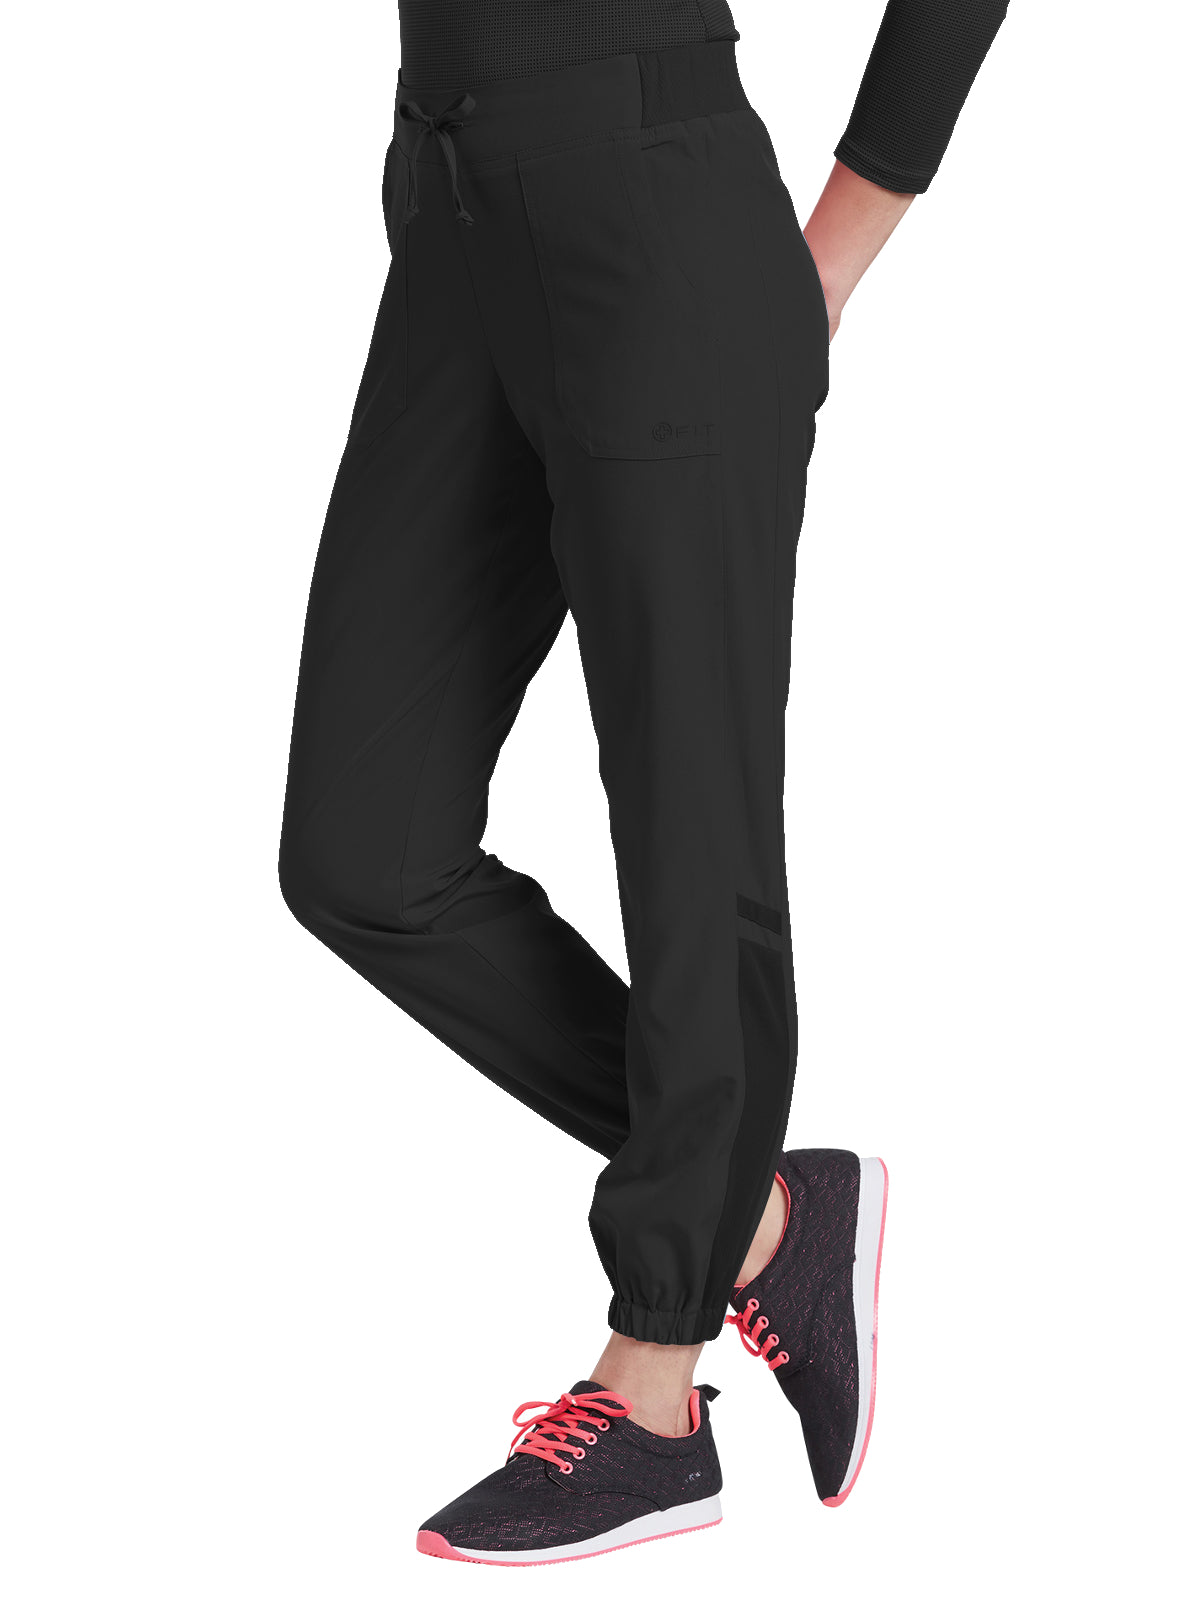 Women's Jogger Pant - 399 - Black